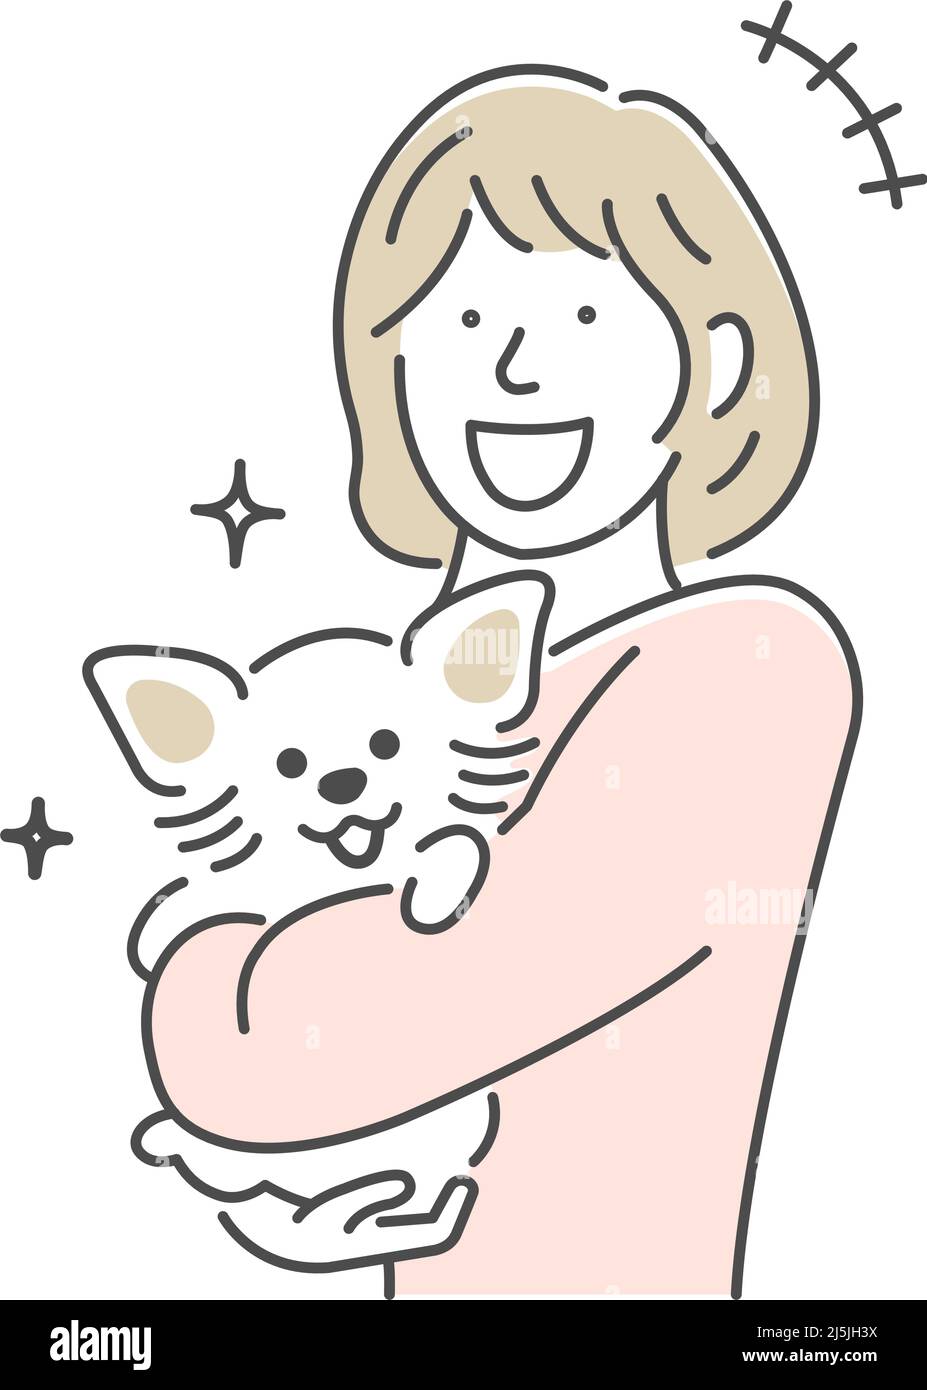 Ilustración de una mujer sosteniendo un perro | alegre, riendo Ilustración del Vector